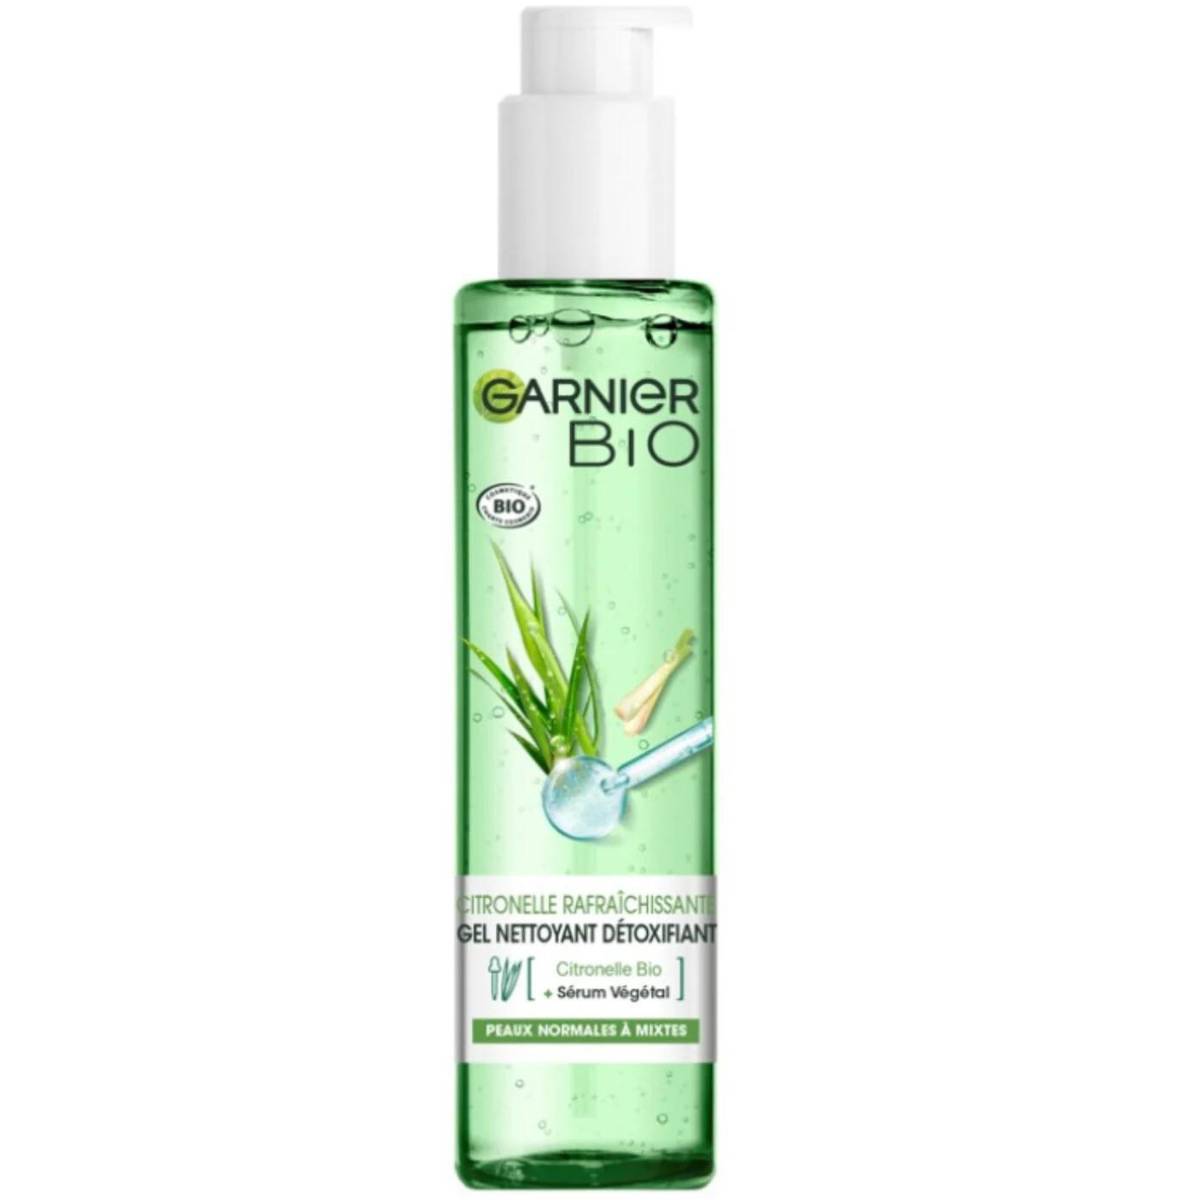 Lemongrass Bio Detoxifying Face 150ml Cleanser Garnier MaxxiDiscount -